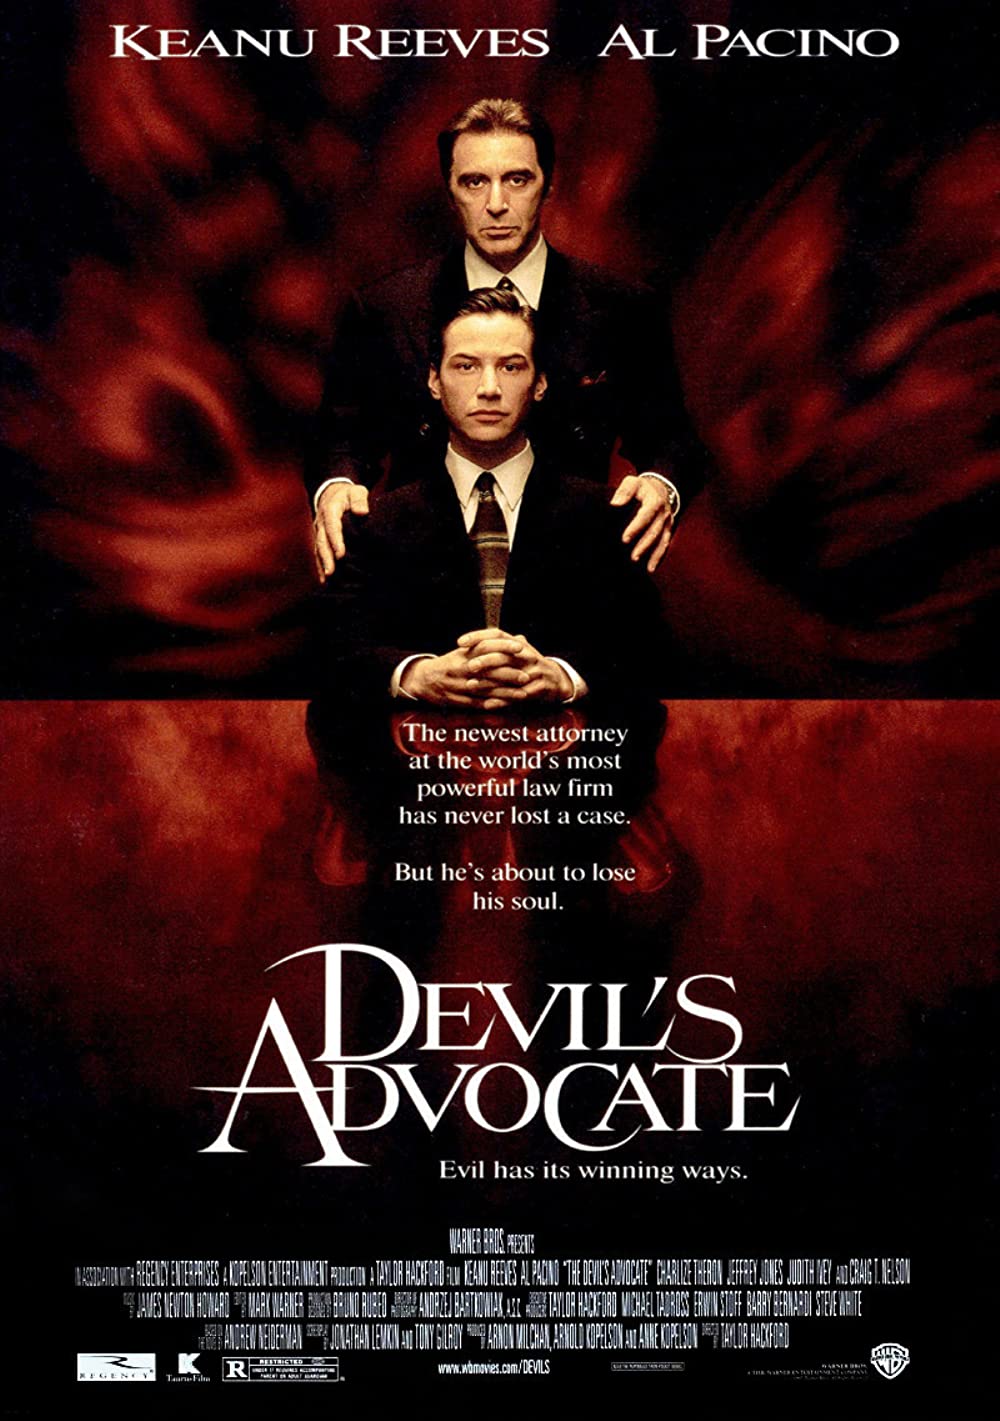 Filmbeschreibung zu The Devils Advocate